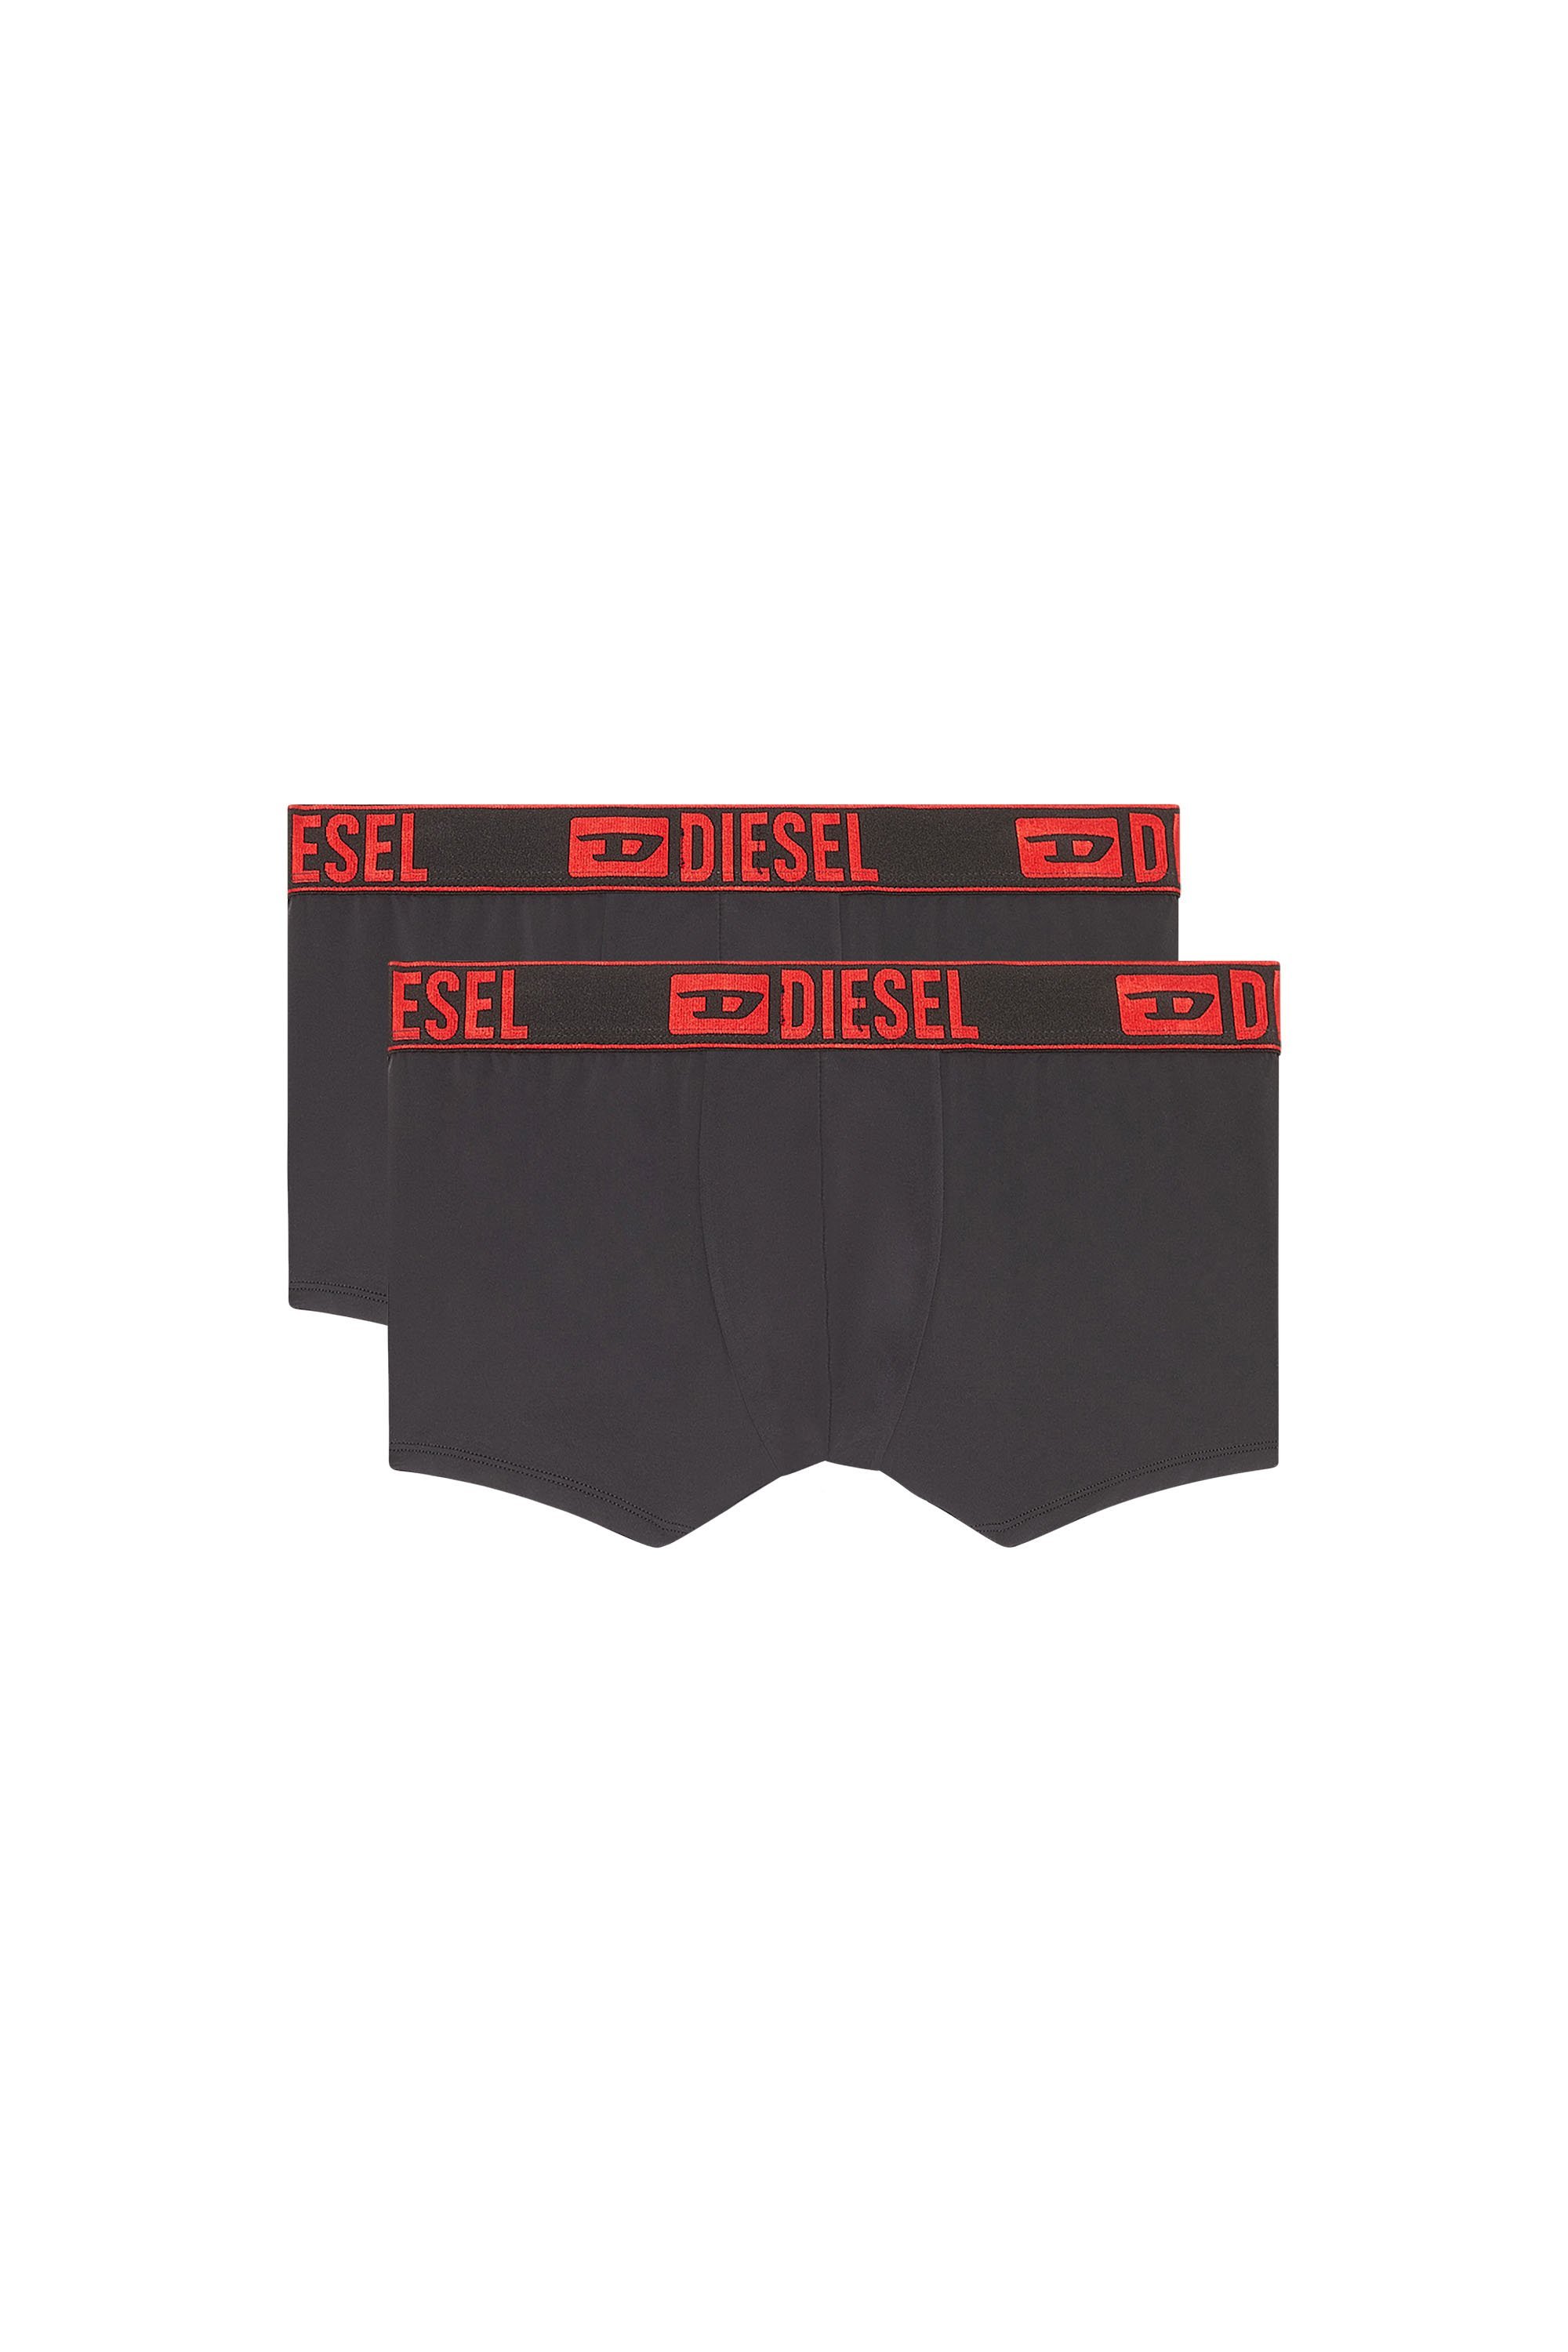 ディーゼル パンツ メンズ DIESEL メンズ アンダーウェア ボクサーパンツ 2枚セット ディーゼル インナー・ルームウェア ボクサーパンツ・トランクス ブラック【送料無料】